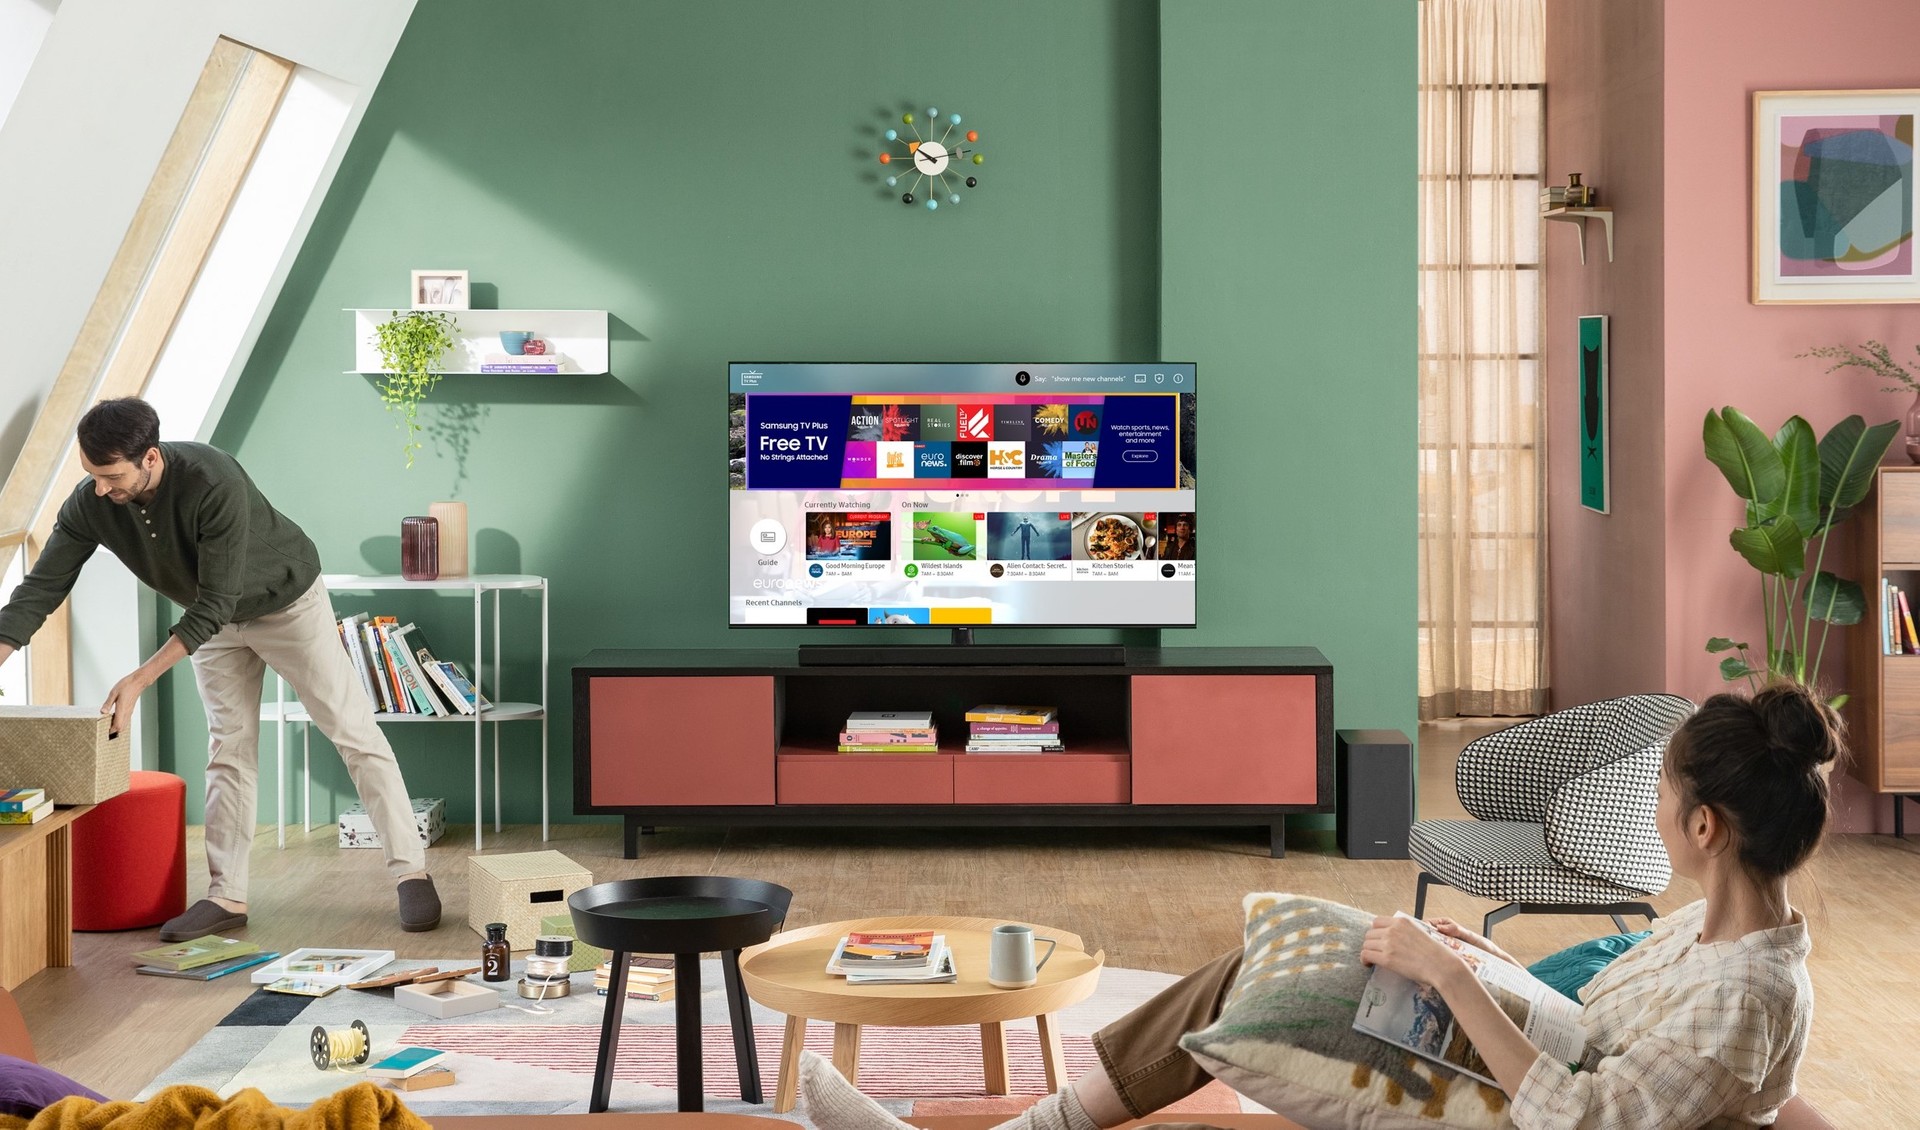 Samsung TV Plus enriquece la oferta gratuita con una nueva actualización